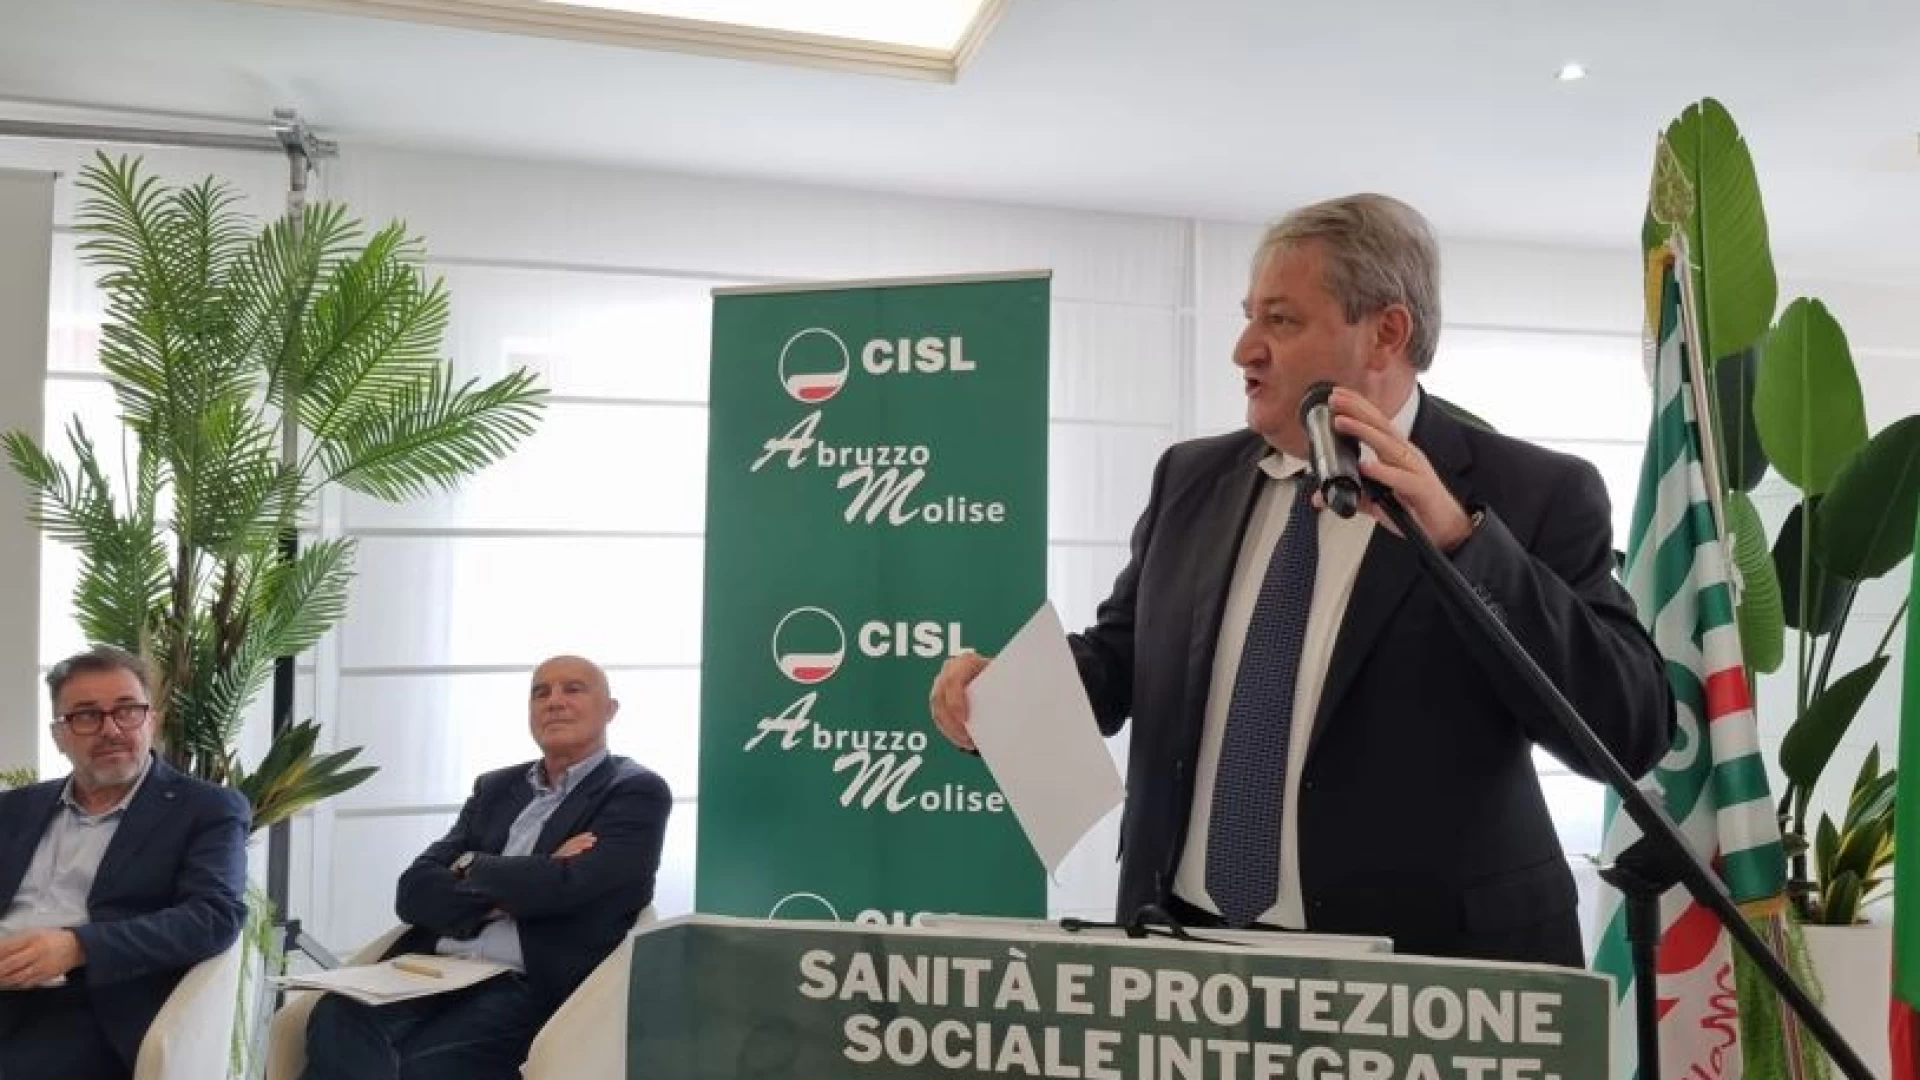 Roberti al convegno della Cisl Abruzzo e Molise su Sanita e protezione sociale. “Rete sanitaria fondamentale per essere vicini alle esigenze dei cittadini”.